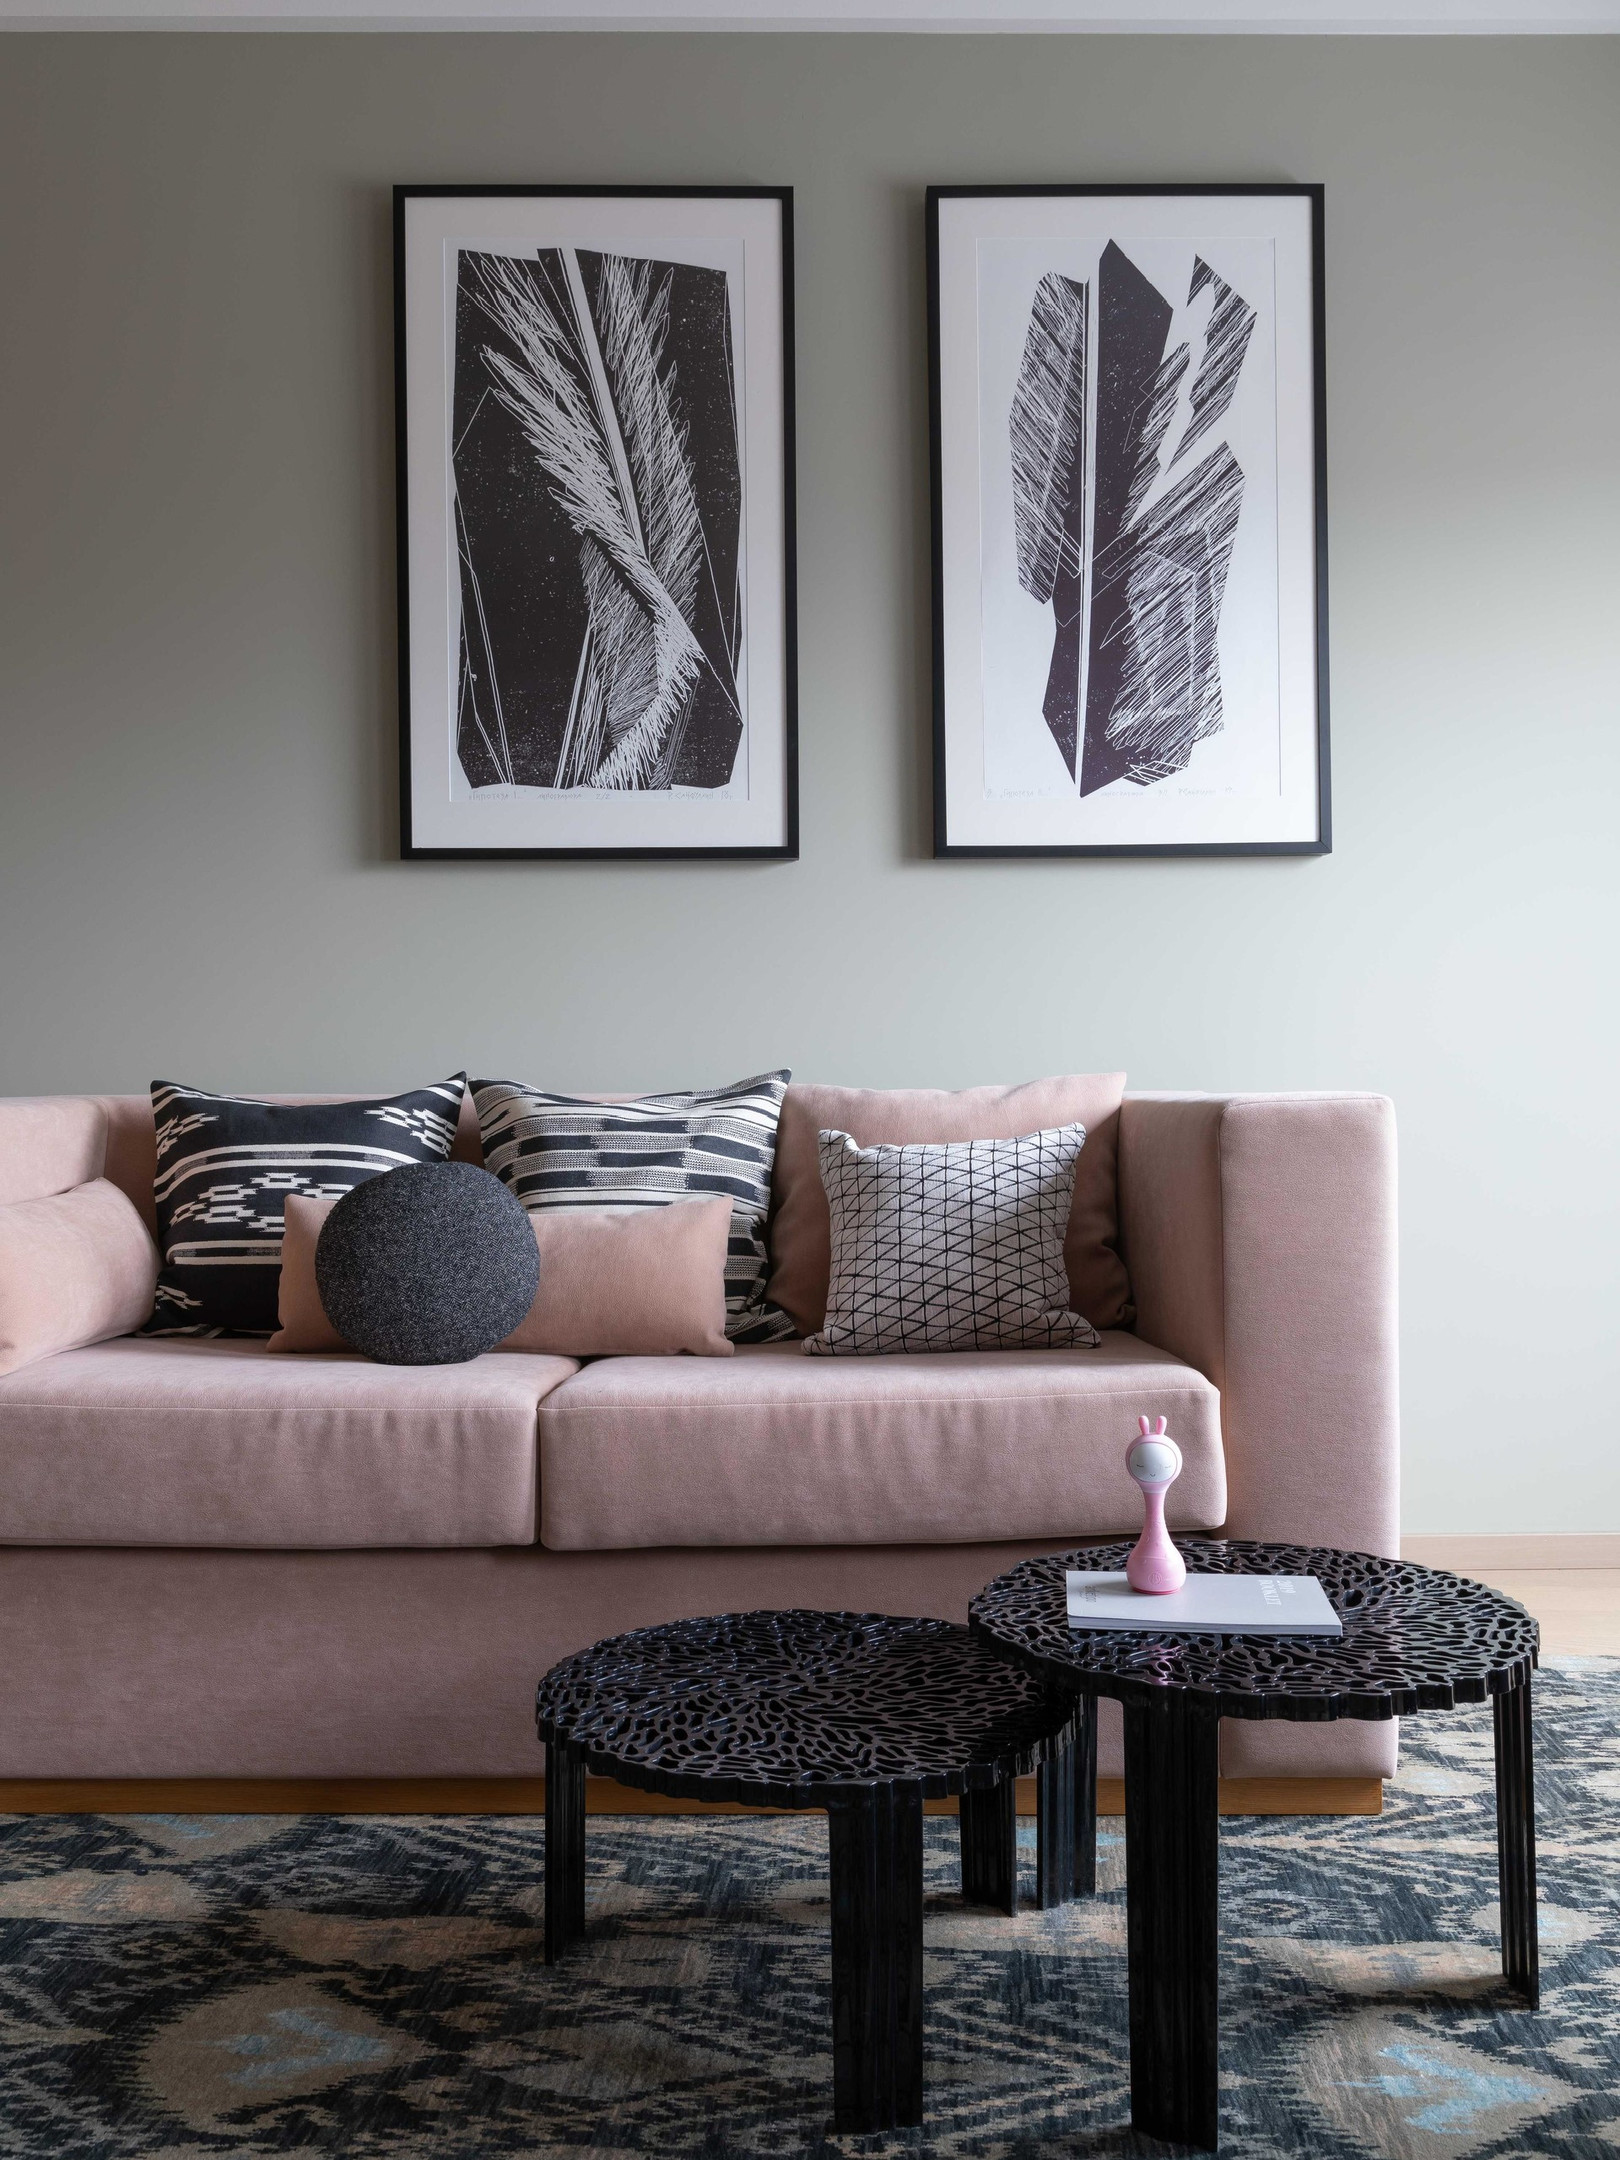 Một khu vực tiếp khách phụ cũng được bố trí sofa hồng phấn nhưng kích thước nhỏ hơn. Bộ bàn nước hình tròn cao thấp có thể lồng ghép vào nhau với hoa văn độc đáo, phía trên bức tường là những tác phẩm nghệ thuật trắng đen ấn tượng. 